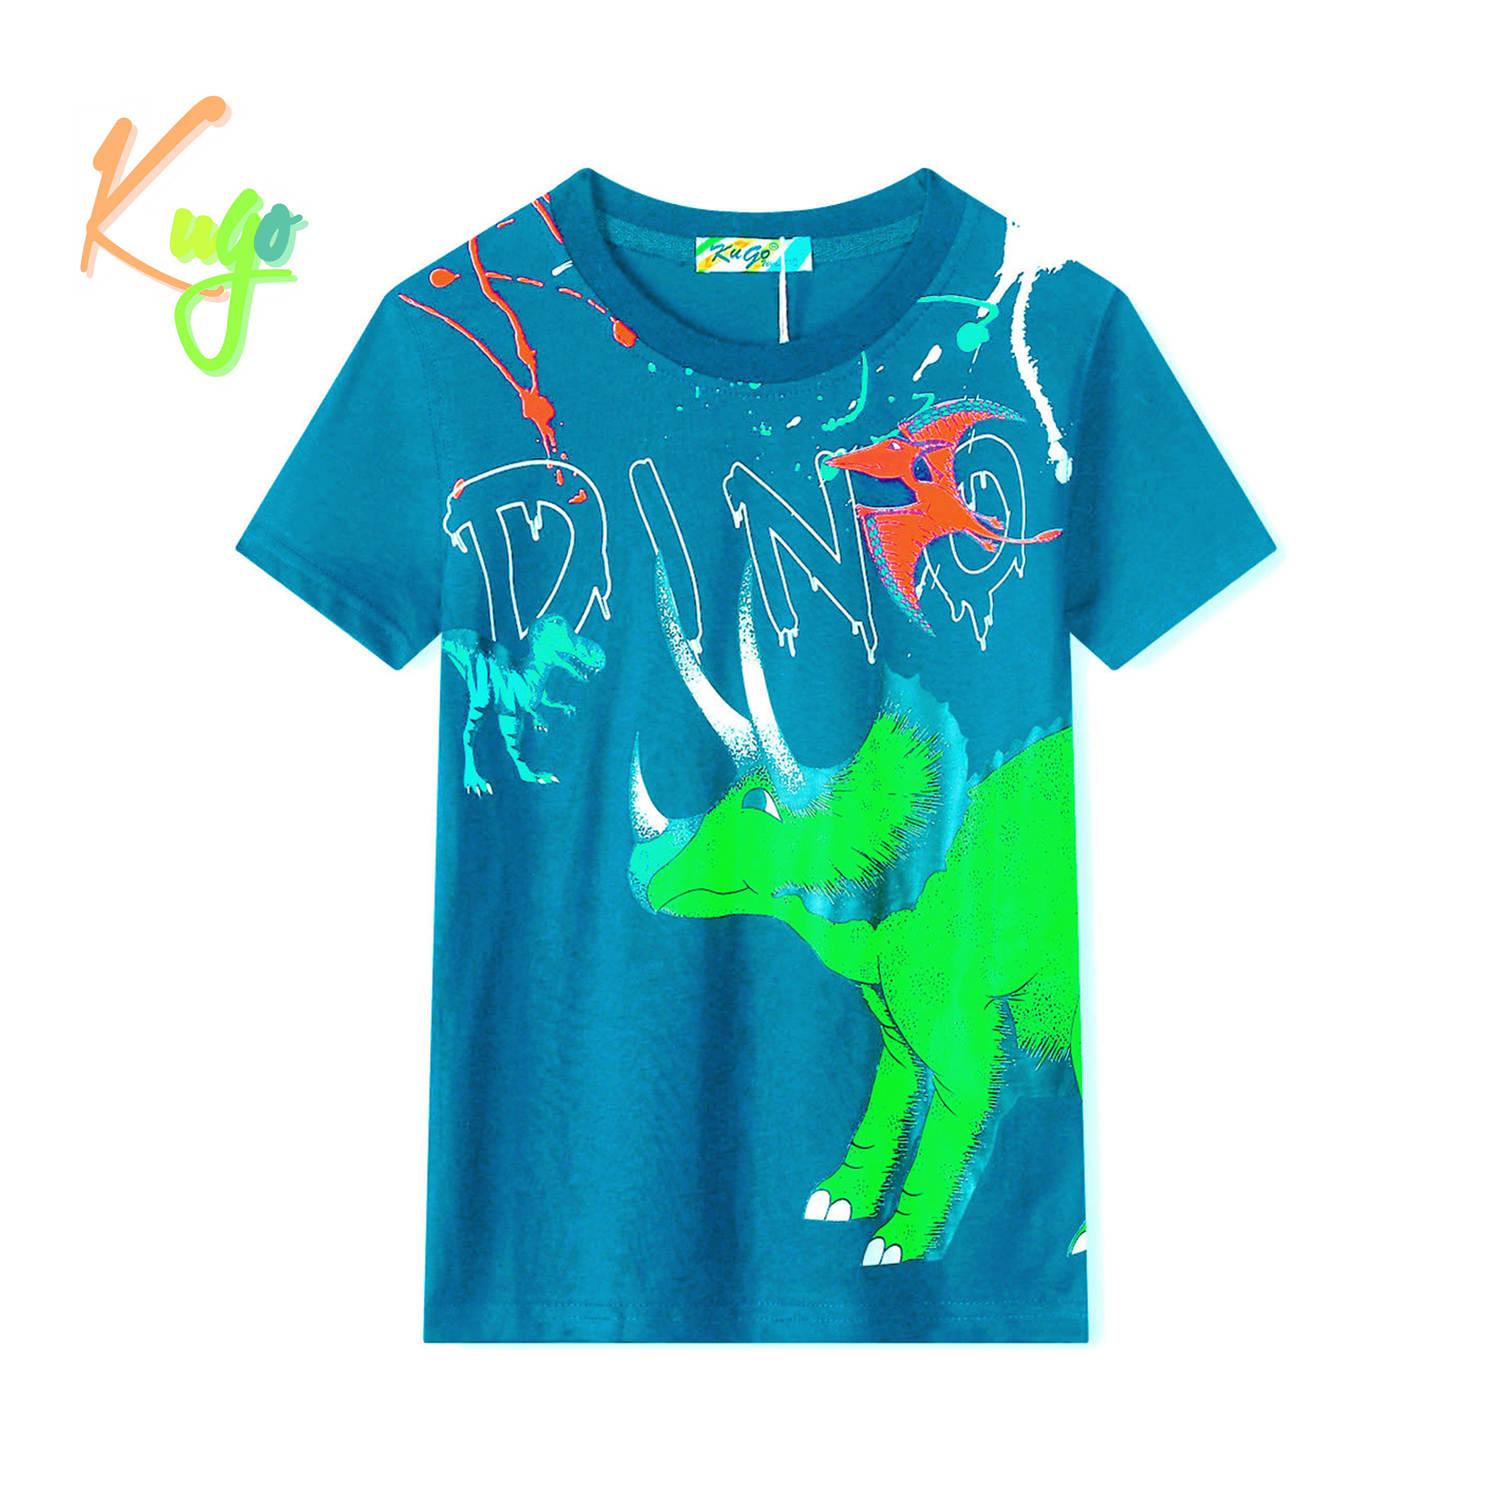 Chlapecké tričko - KUGO TM8571C, tyrkysová Barva: Tyrkysová, Velikost: 98